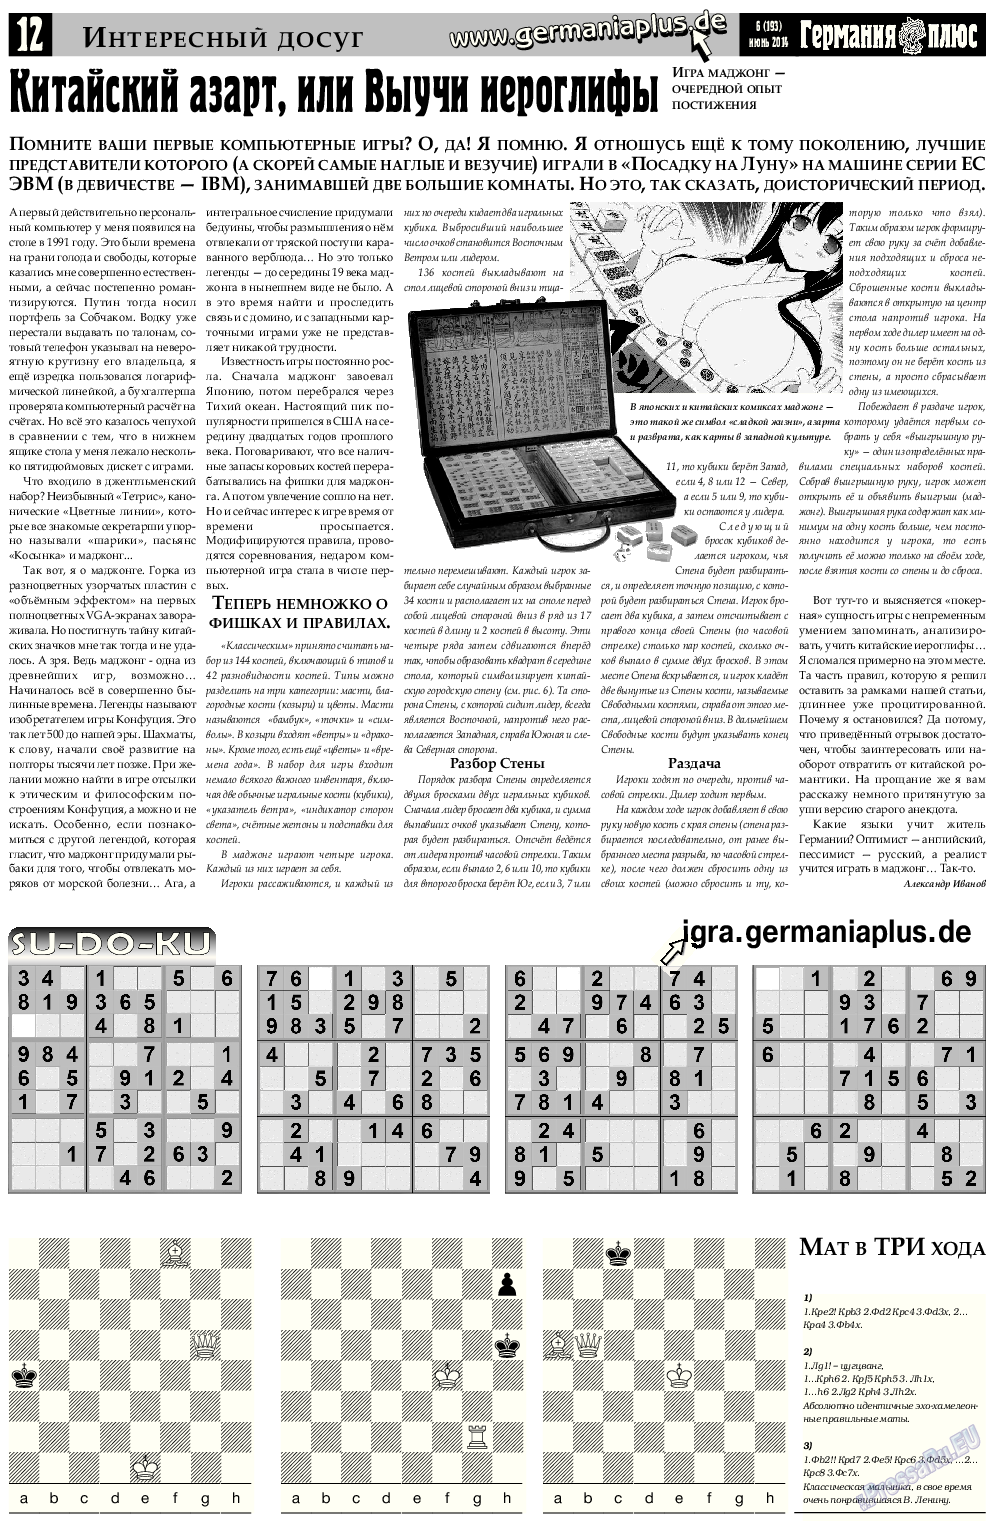 Германия плюс, газета. 2014 №6 стр.12